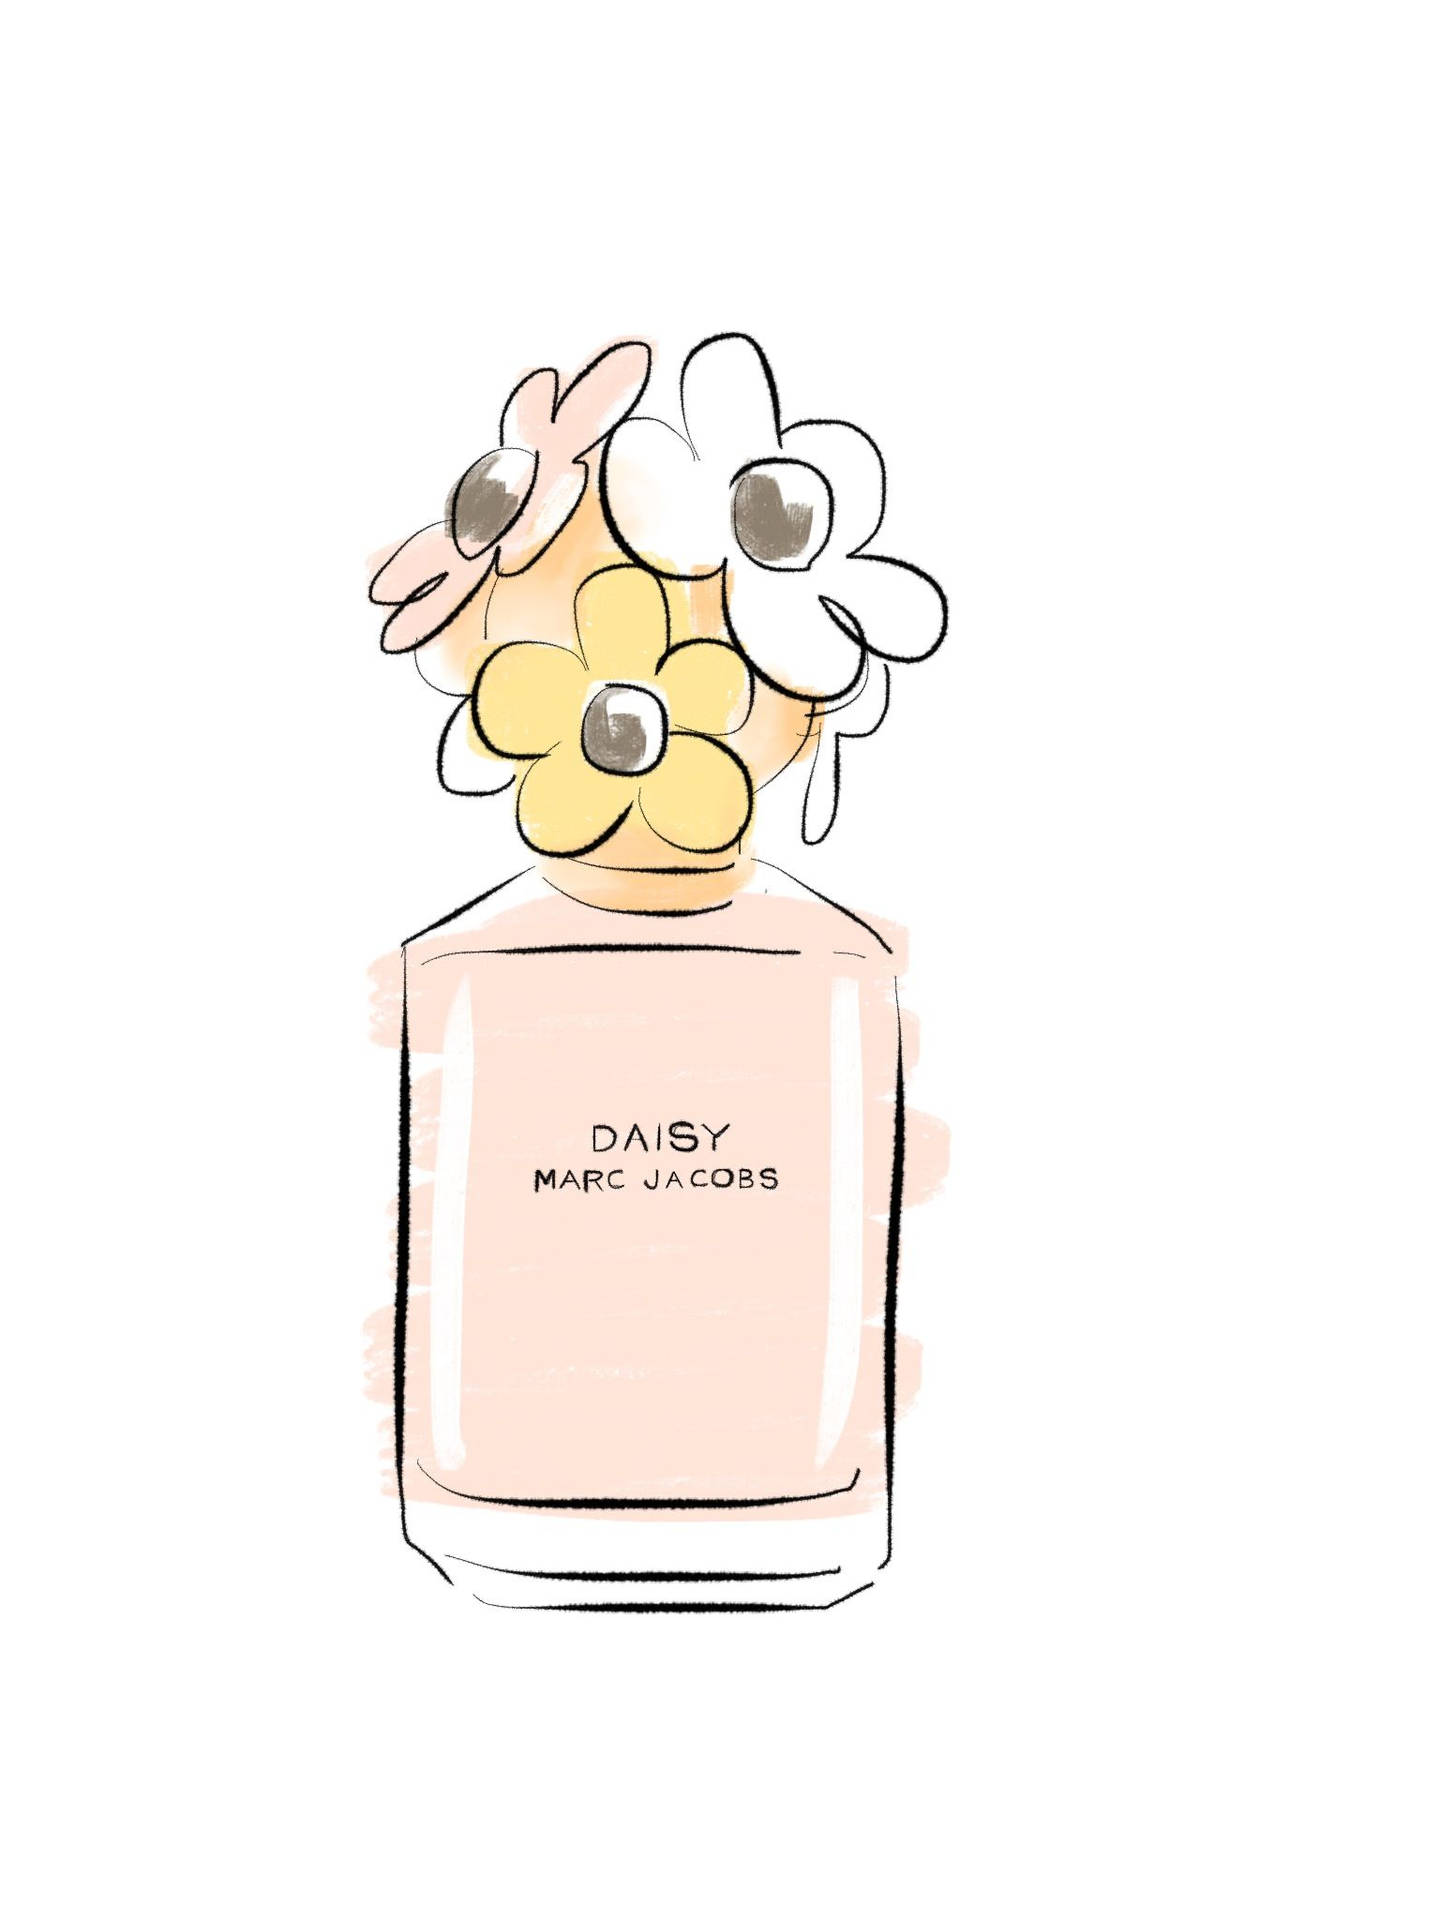 Marc Jacobs Daisy Perfume Art